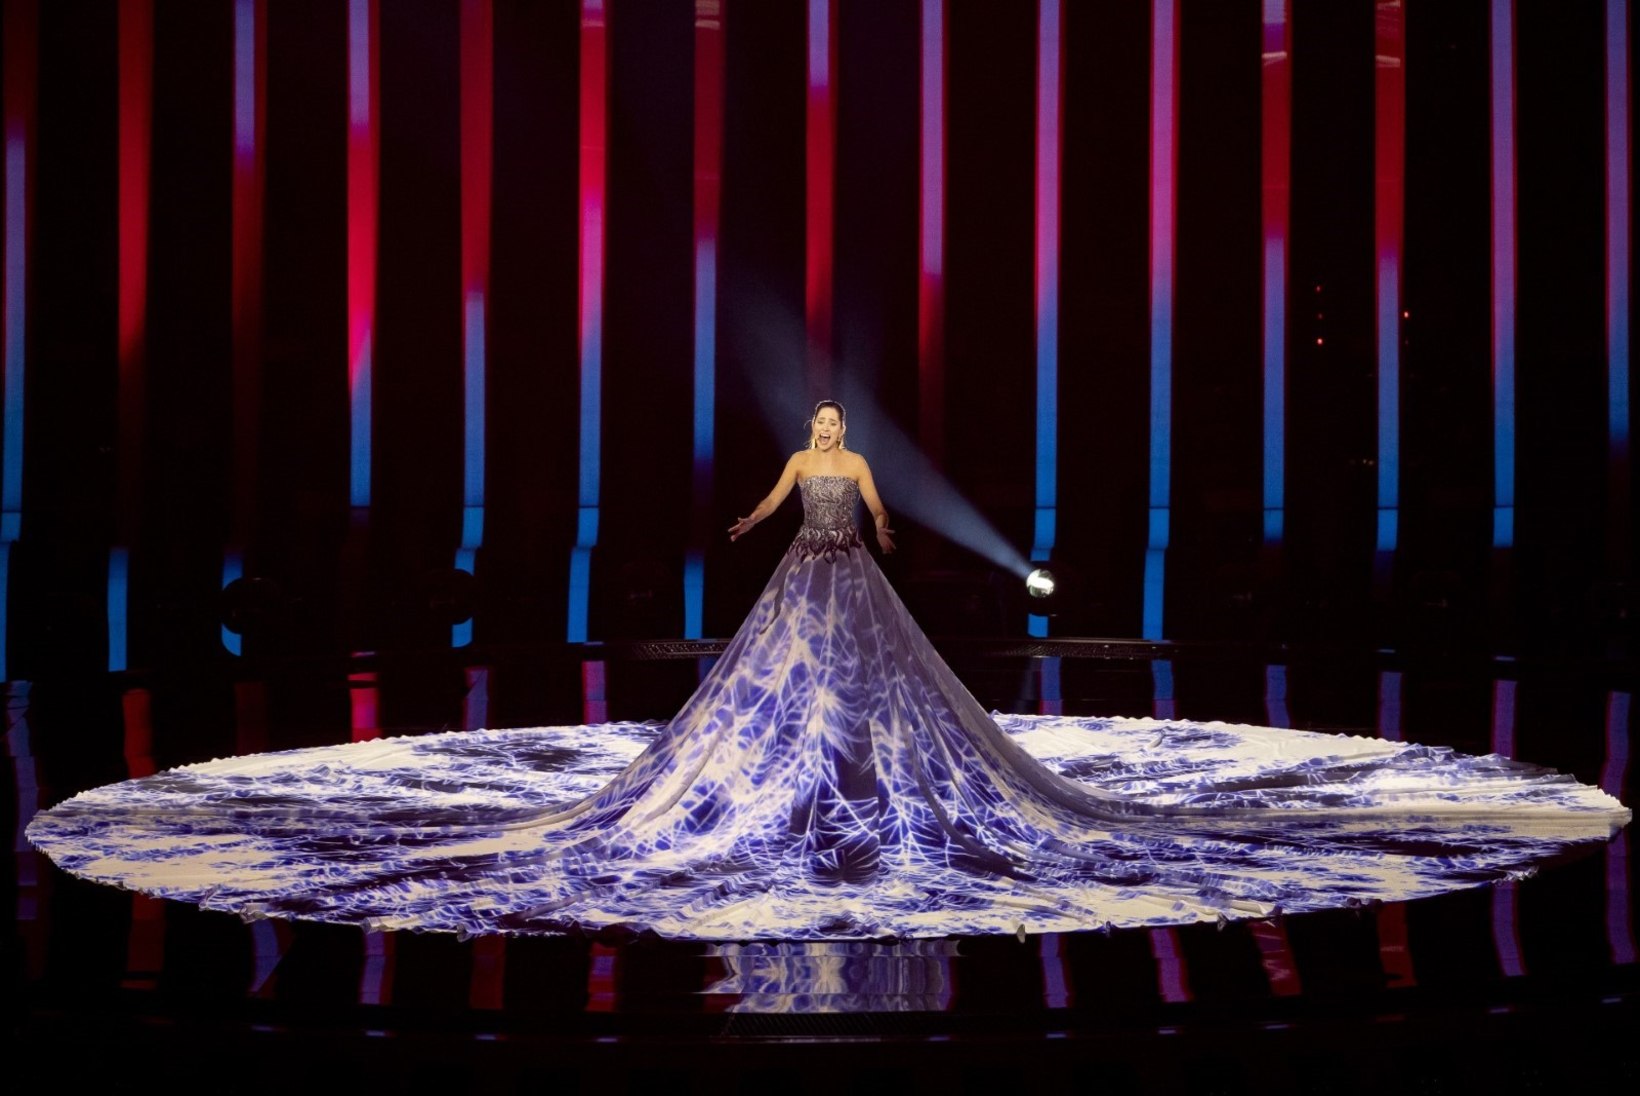 FACEBOOK LIVE | Vaata, kuidas Eurovisioni pressiruumis meie Elinale kaasa elati